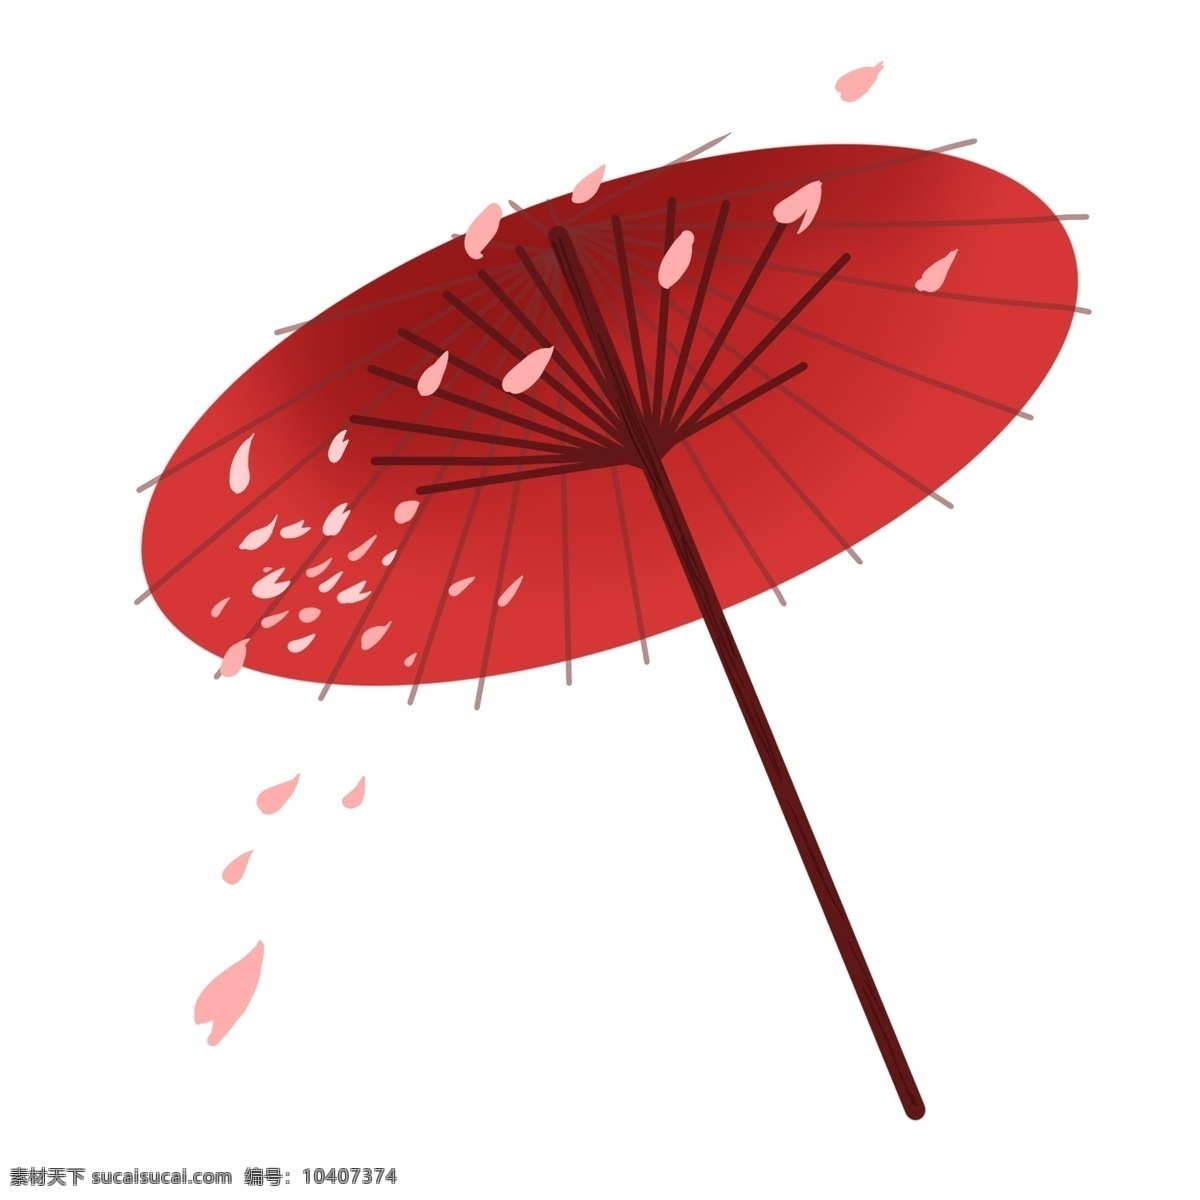 樱花 花瓣 装饰 红伞 伞 红色纸伞 油纸伞 樱花伞 飘落的樱花 一把红色伞 漂亮的伞